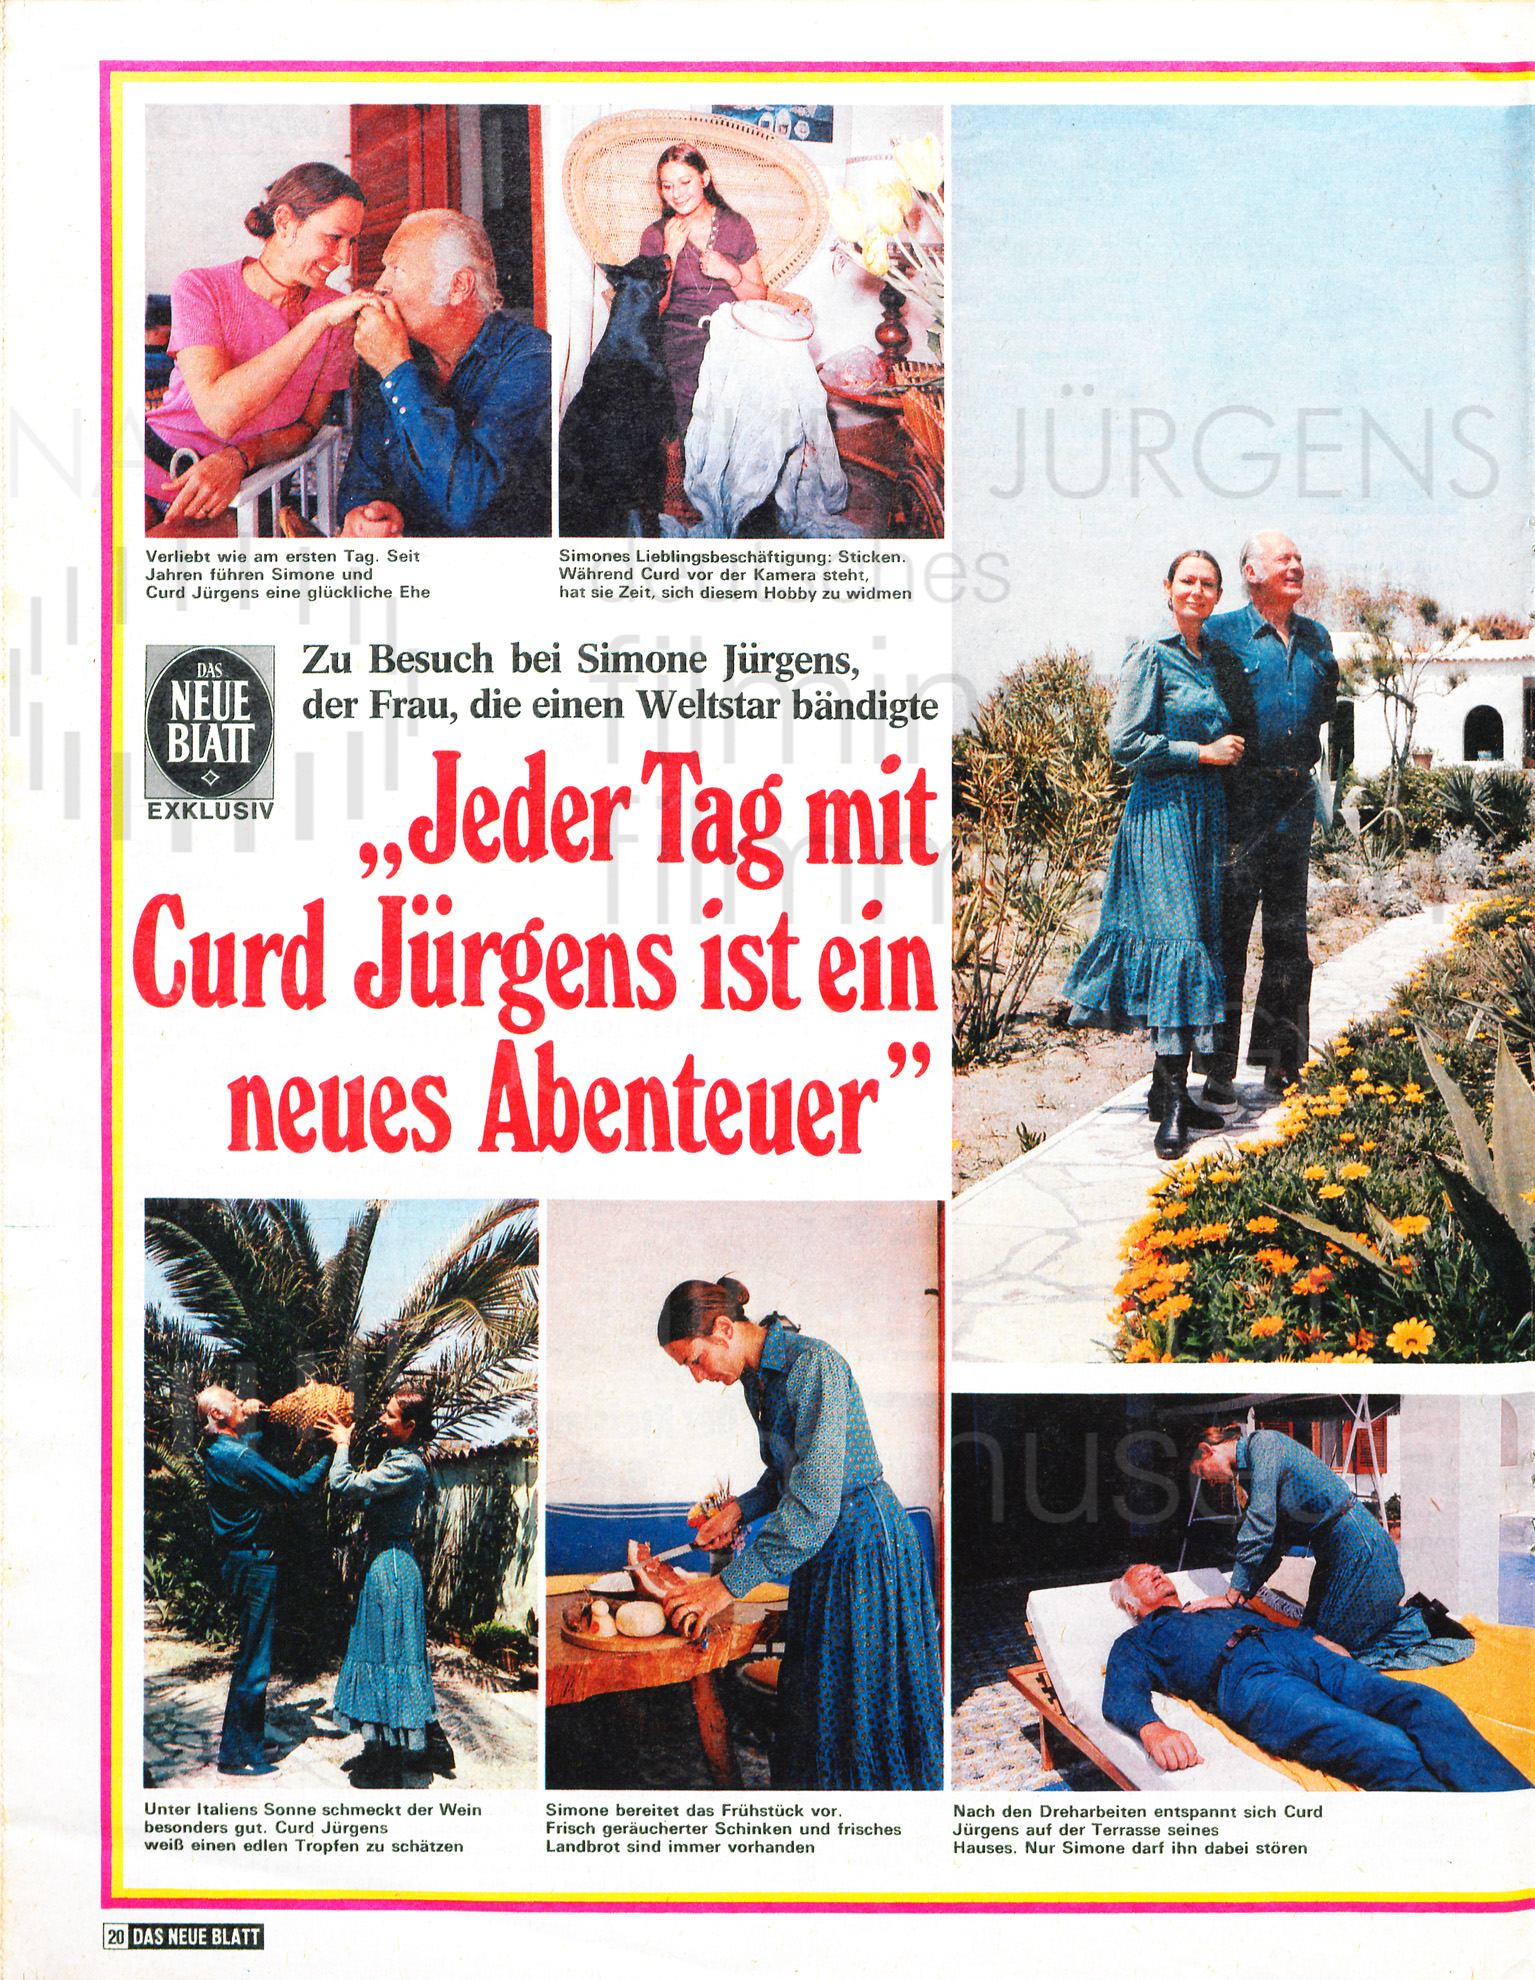 DAS NEUE BLATT: "Jeder Tag mit Curd Jürgens ist ein neues Abenteuer", 19.6.1971